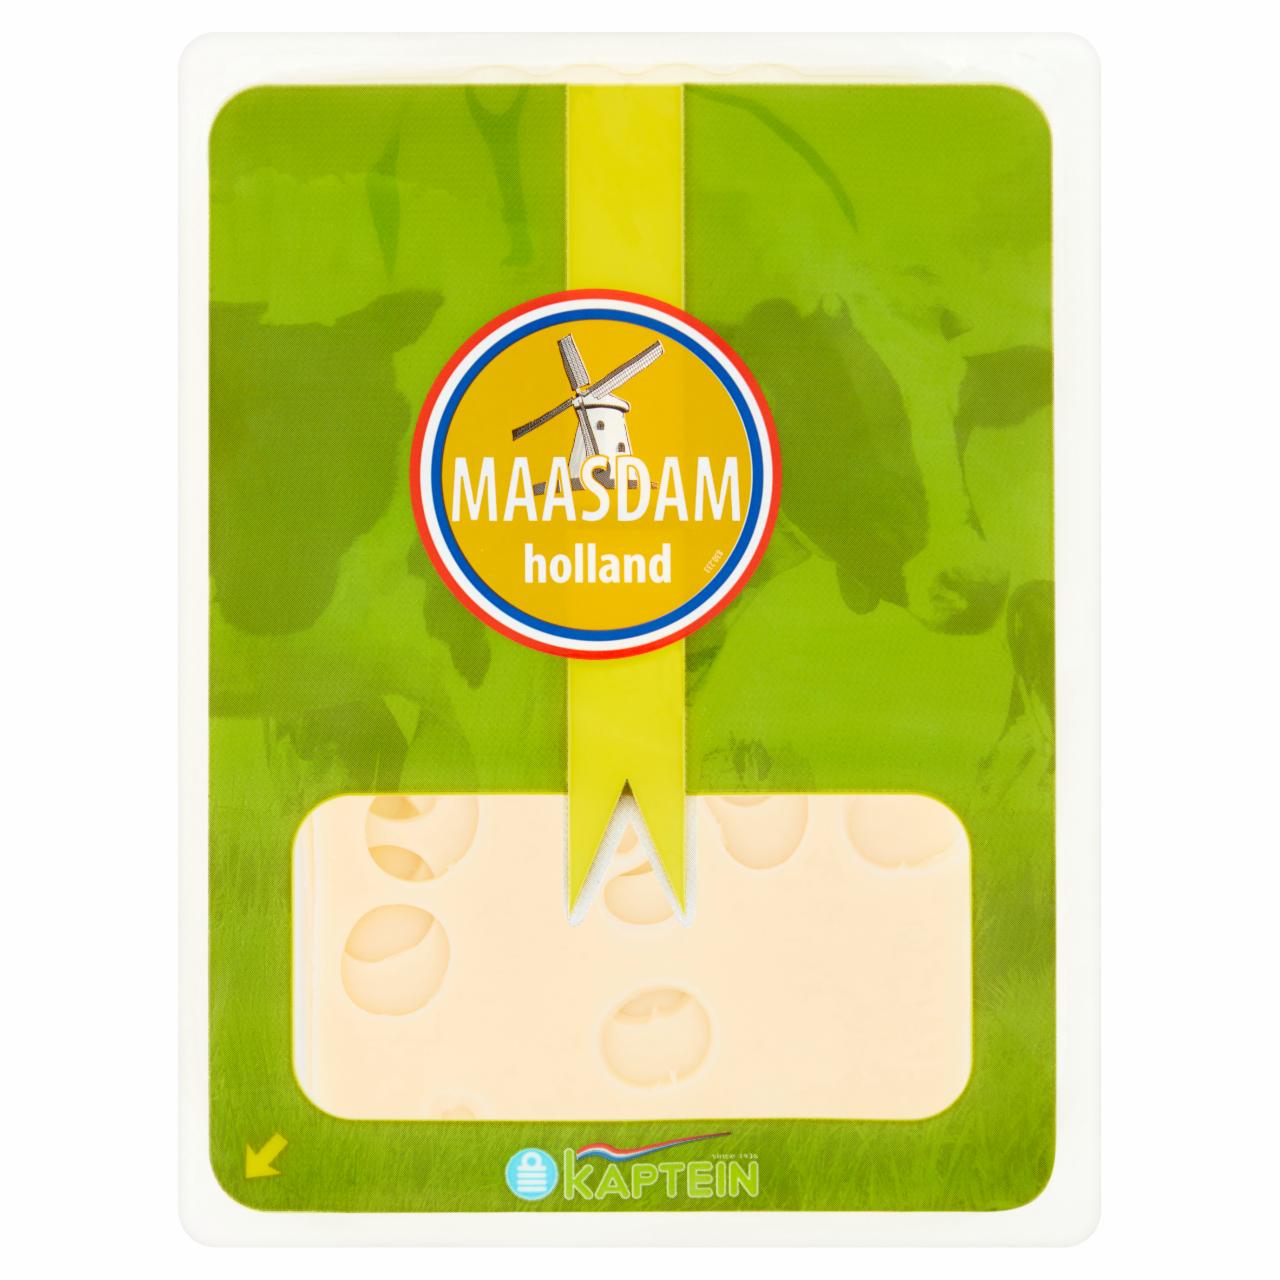 Képek - Kaptein Maasdam félkemény érlelt sajt 100 g